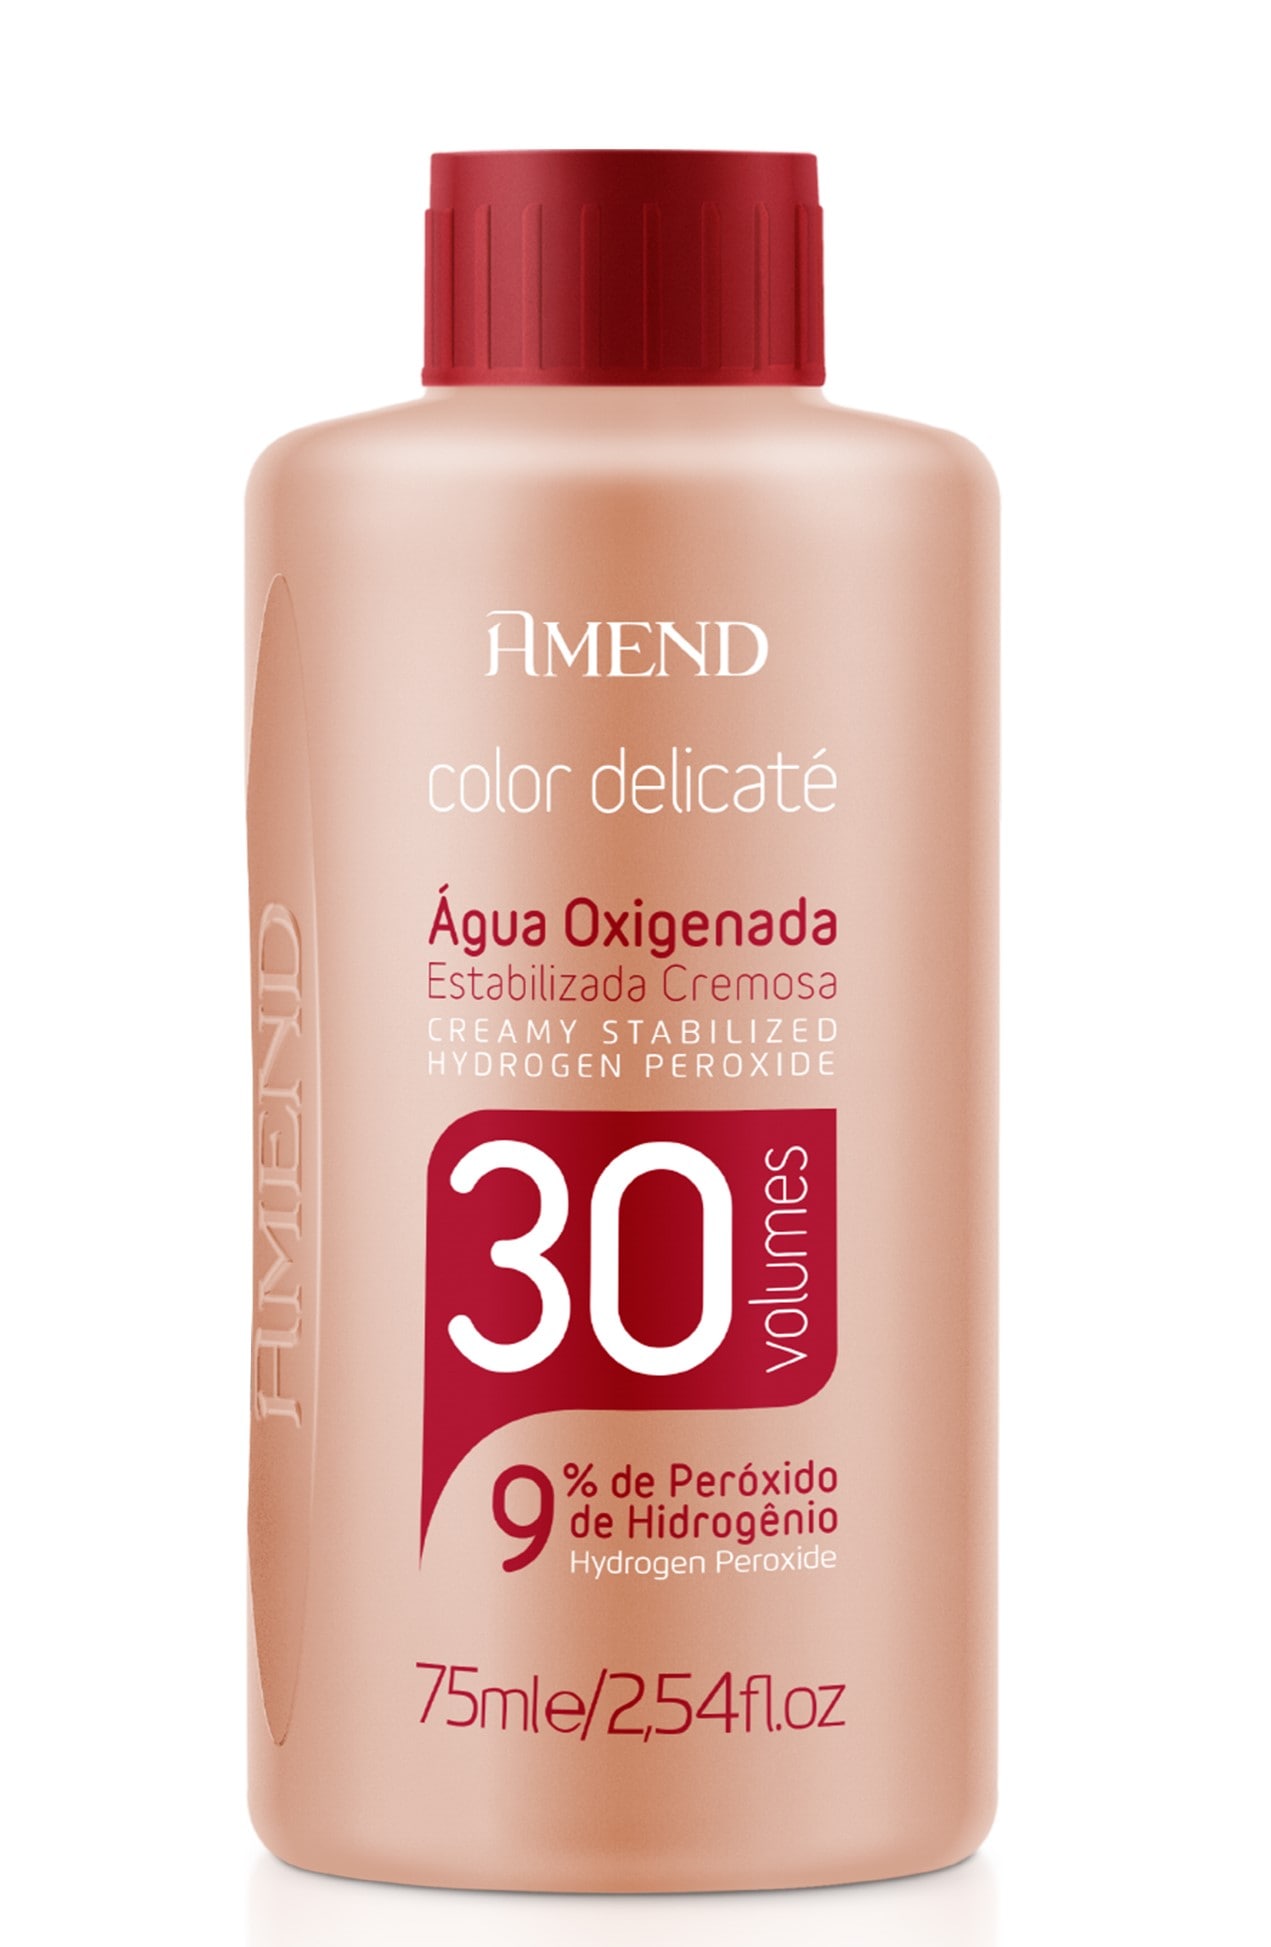 Agua Oxigenada Amend Color Delicate 75ml 30 Volumes